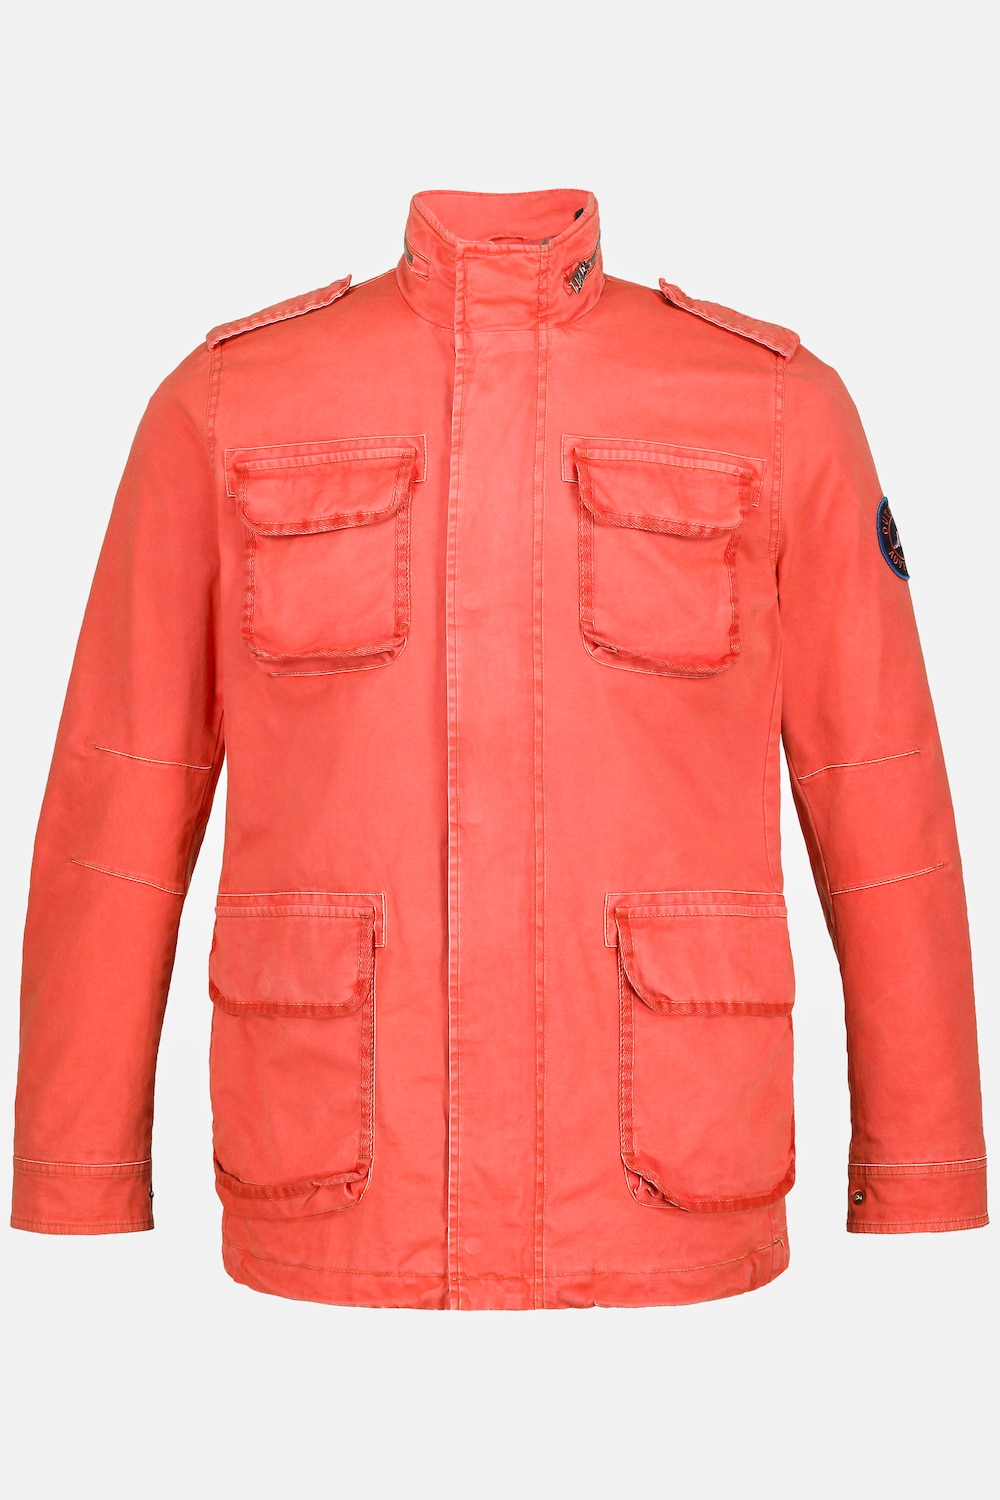 Fieldjacket, Große Größen, Herren, orange, Größe: XL, Polyester/Baumwolle, JP1880 product